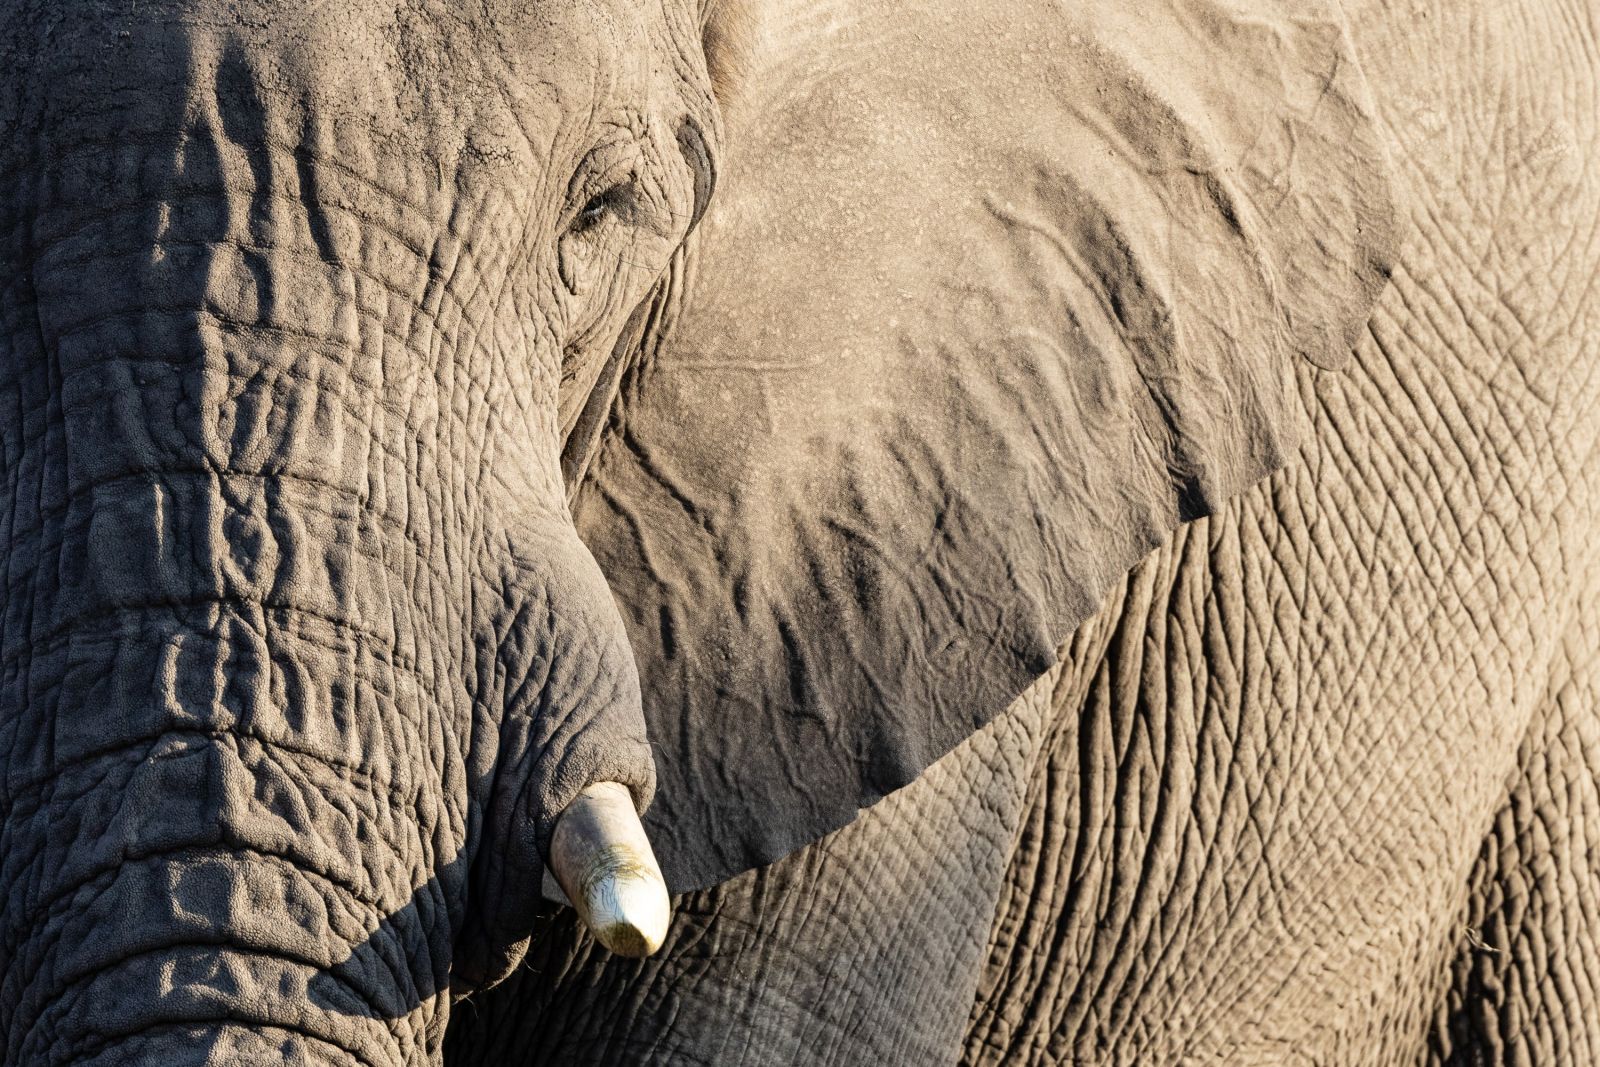 Elefantenporträt, Makgadikgadi Pans National Park